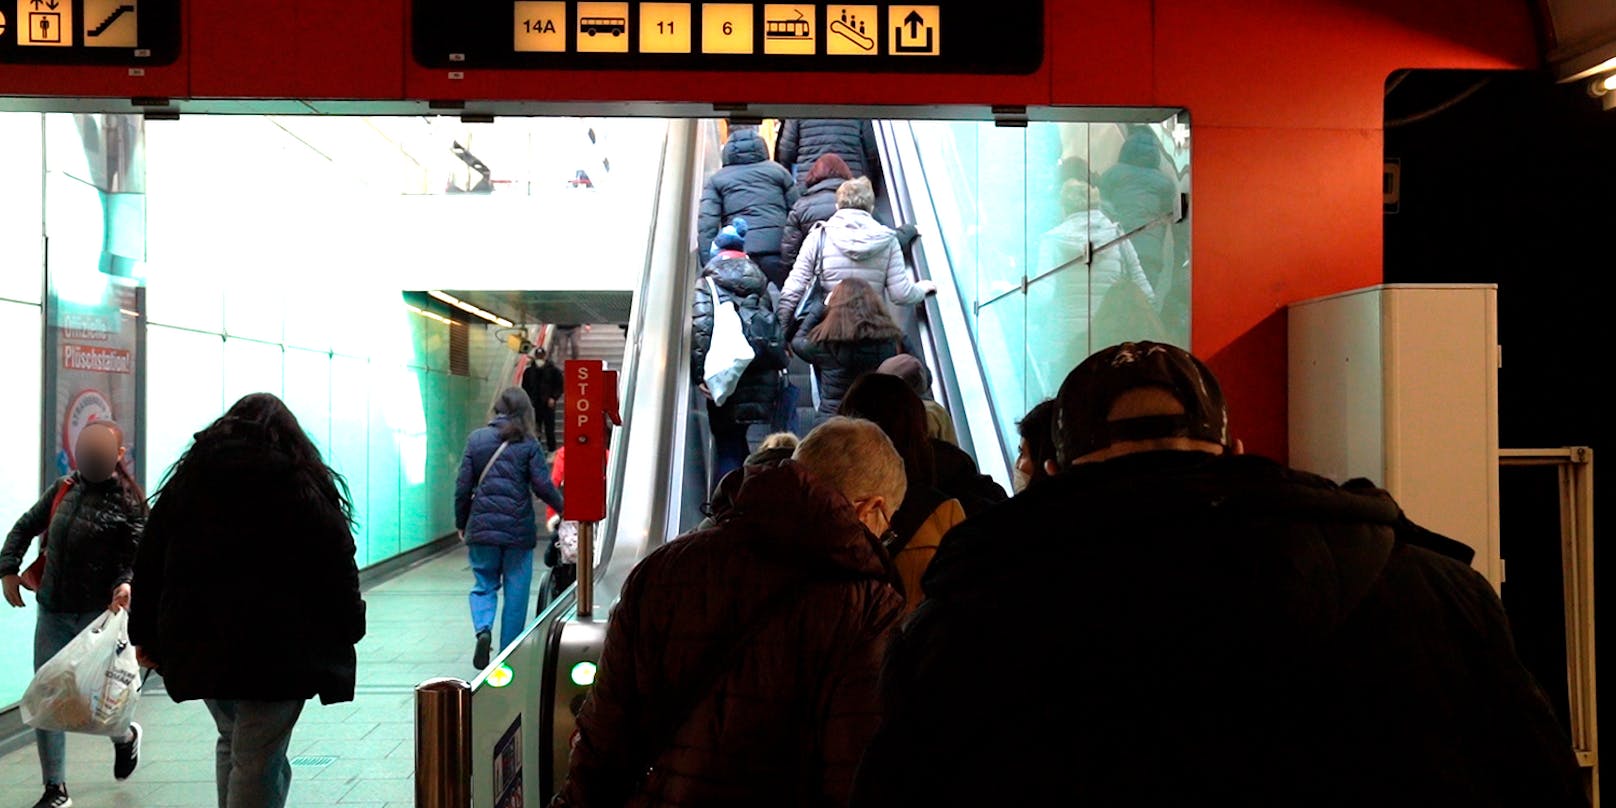 Gedränge auf der Rolltreppe in der U-Bahn-Station Reumannplatz.